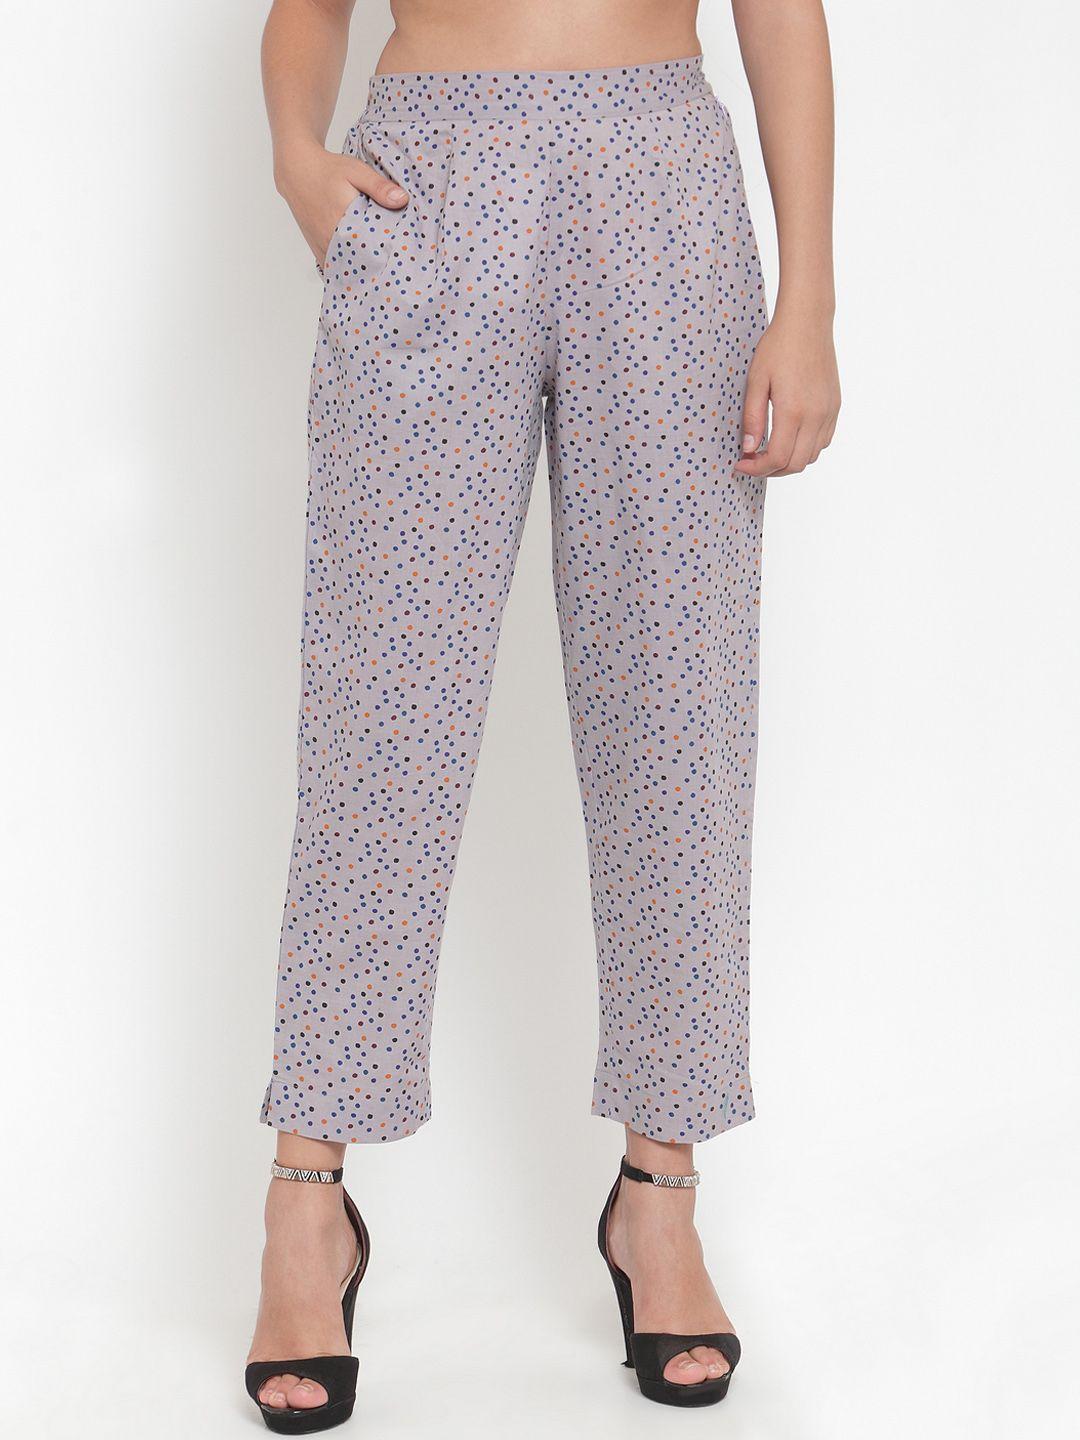 indibelle women grey & blue regular fit printed regular trousers